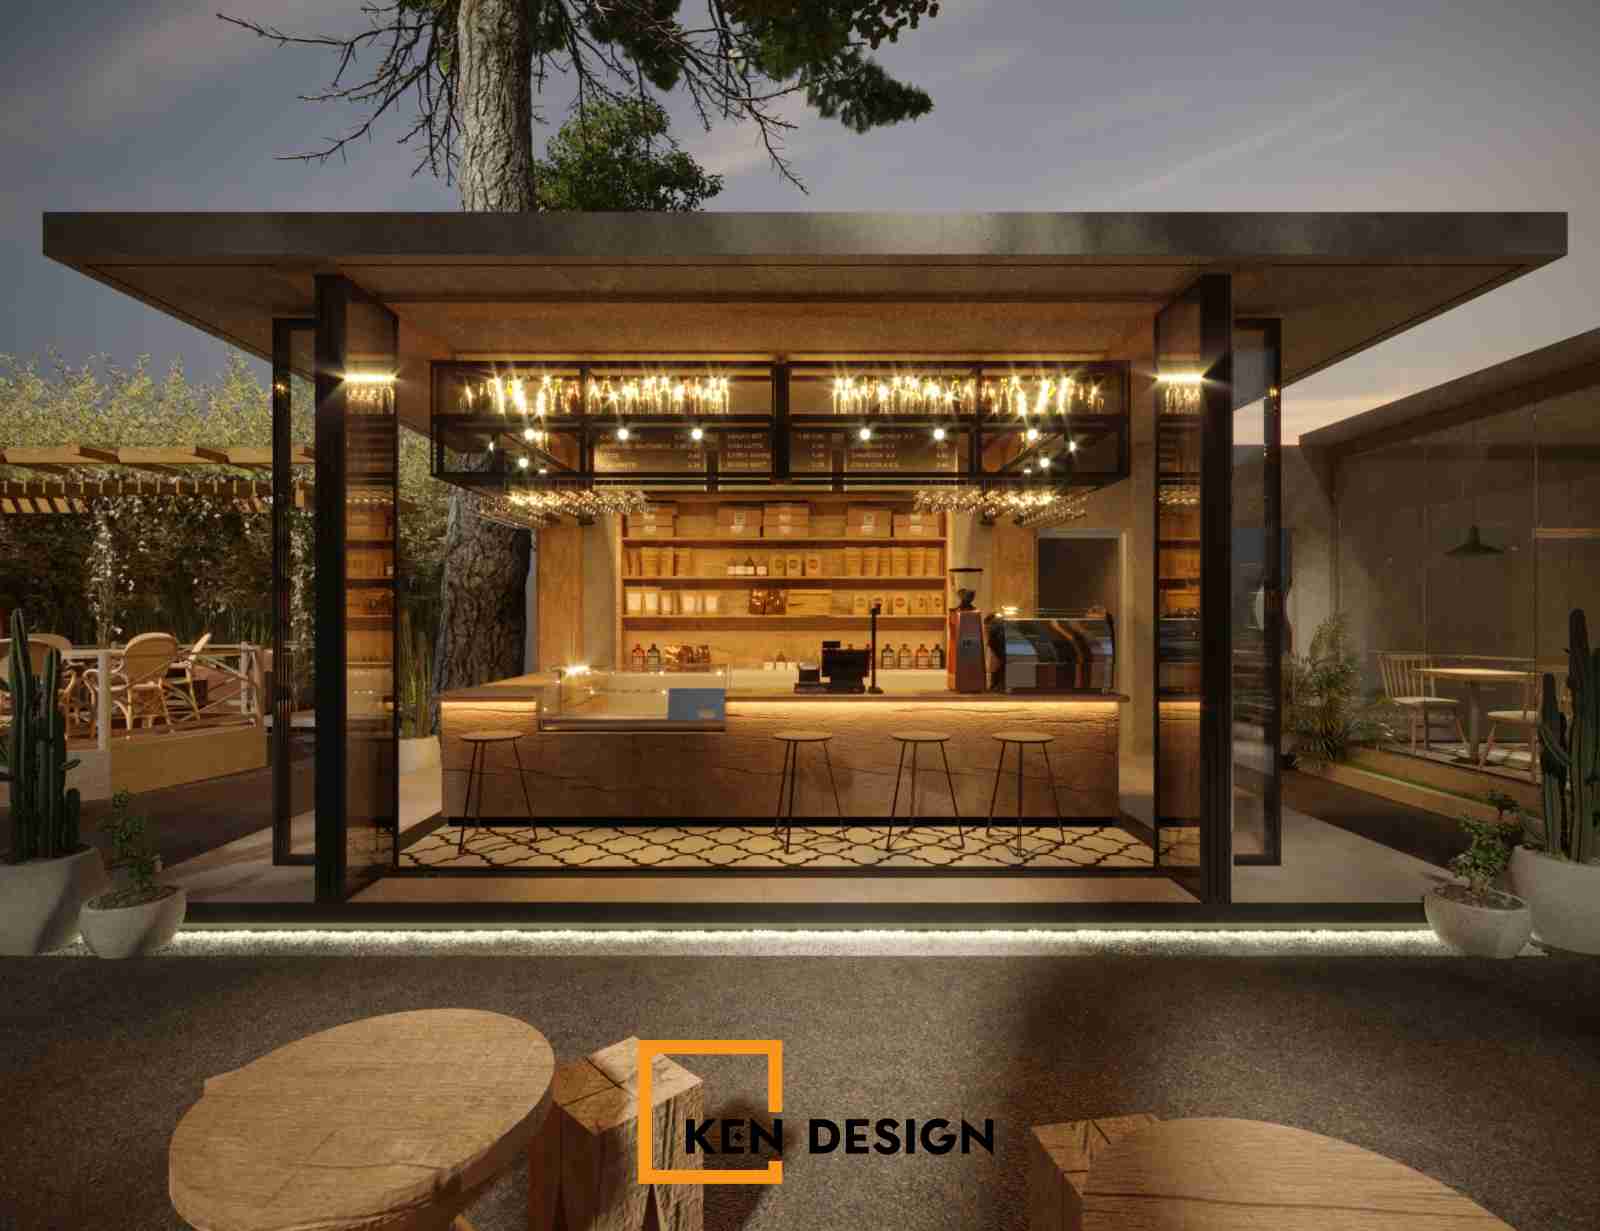 Thiết kế Cafe Vườn Xưa: Phong cách sân vườn mộc mạc